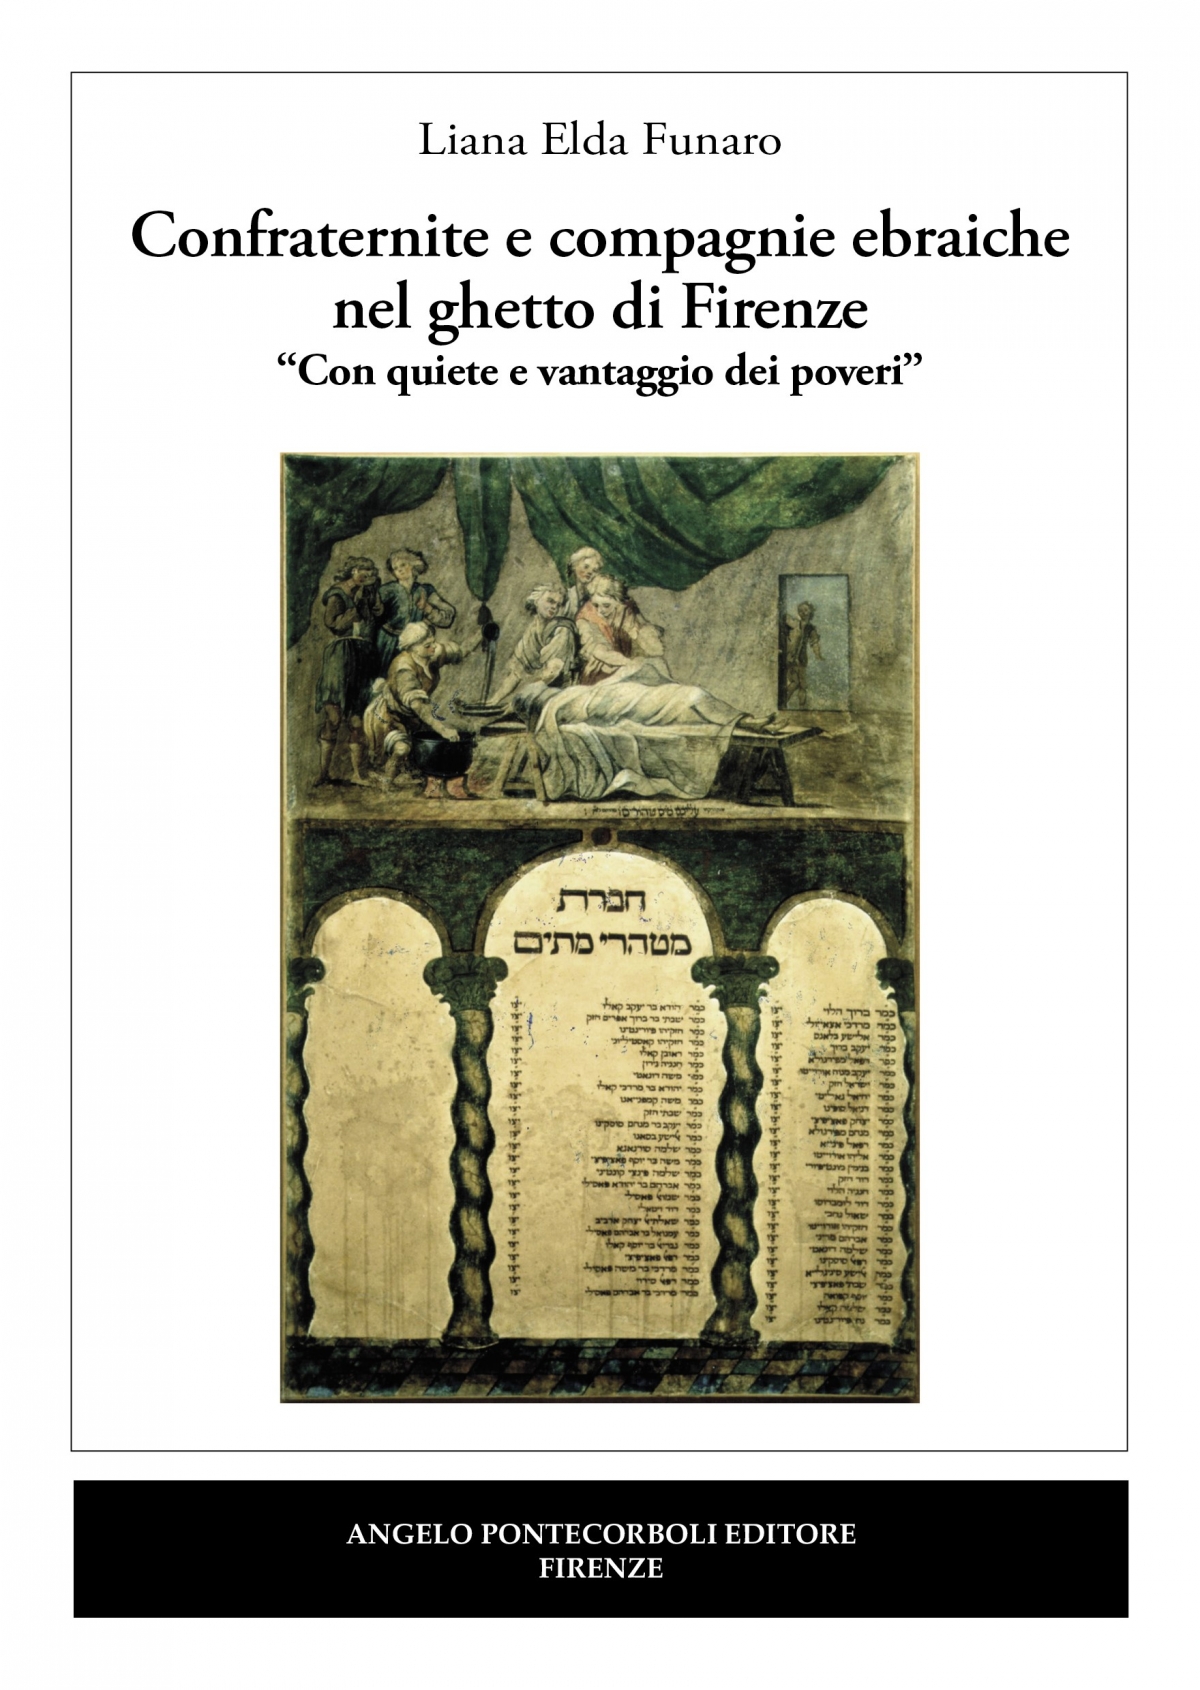 Confraternite e compagnie ebraiche  nel ghetto di Firenze